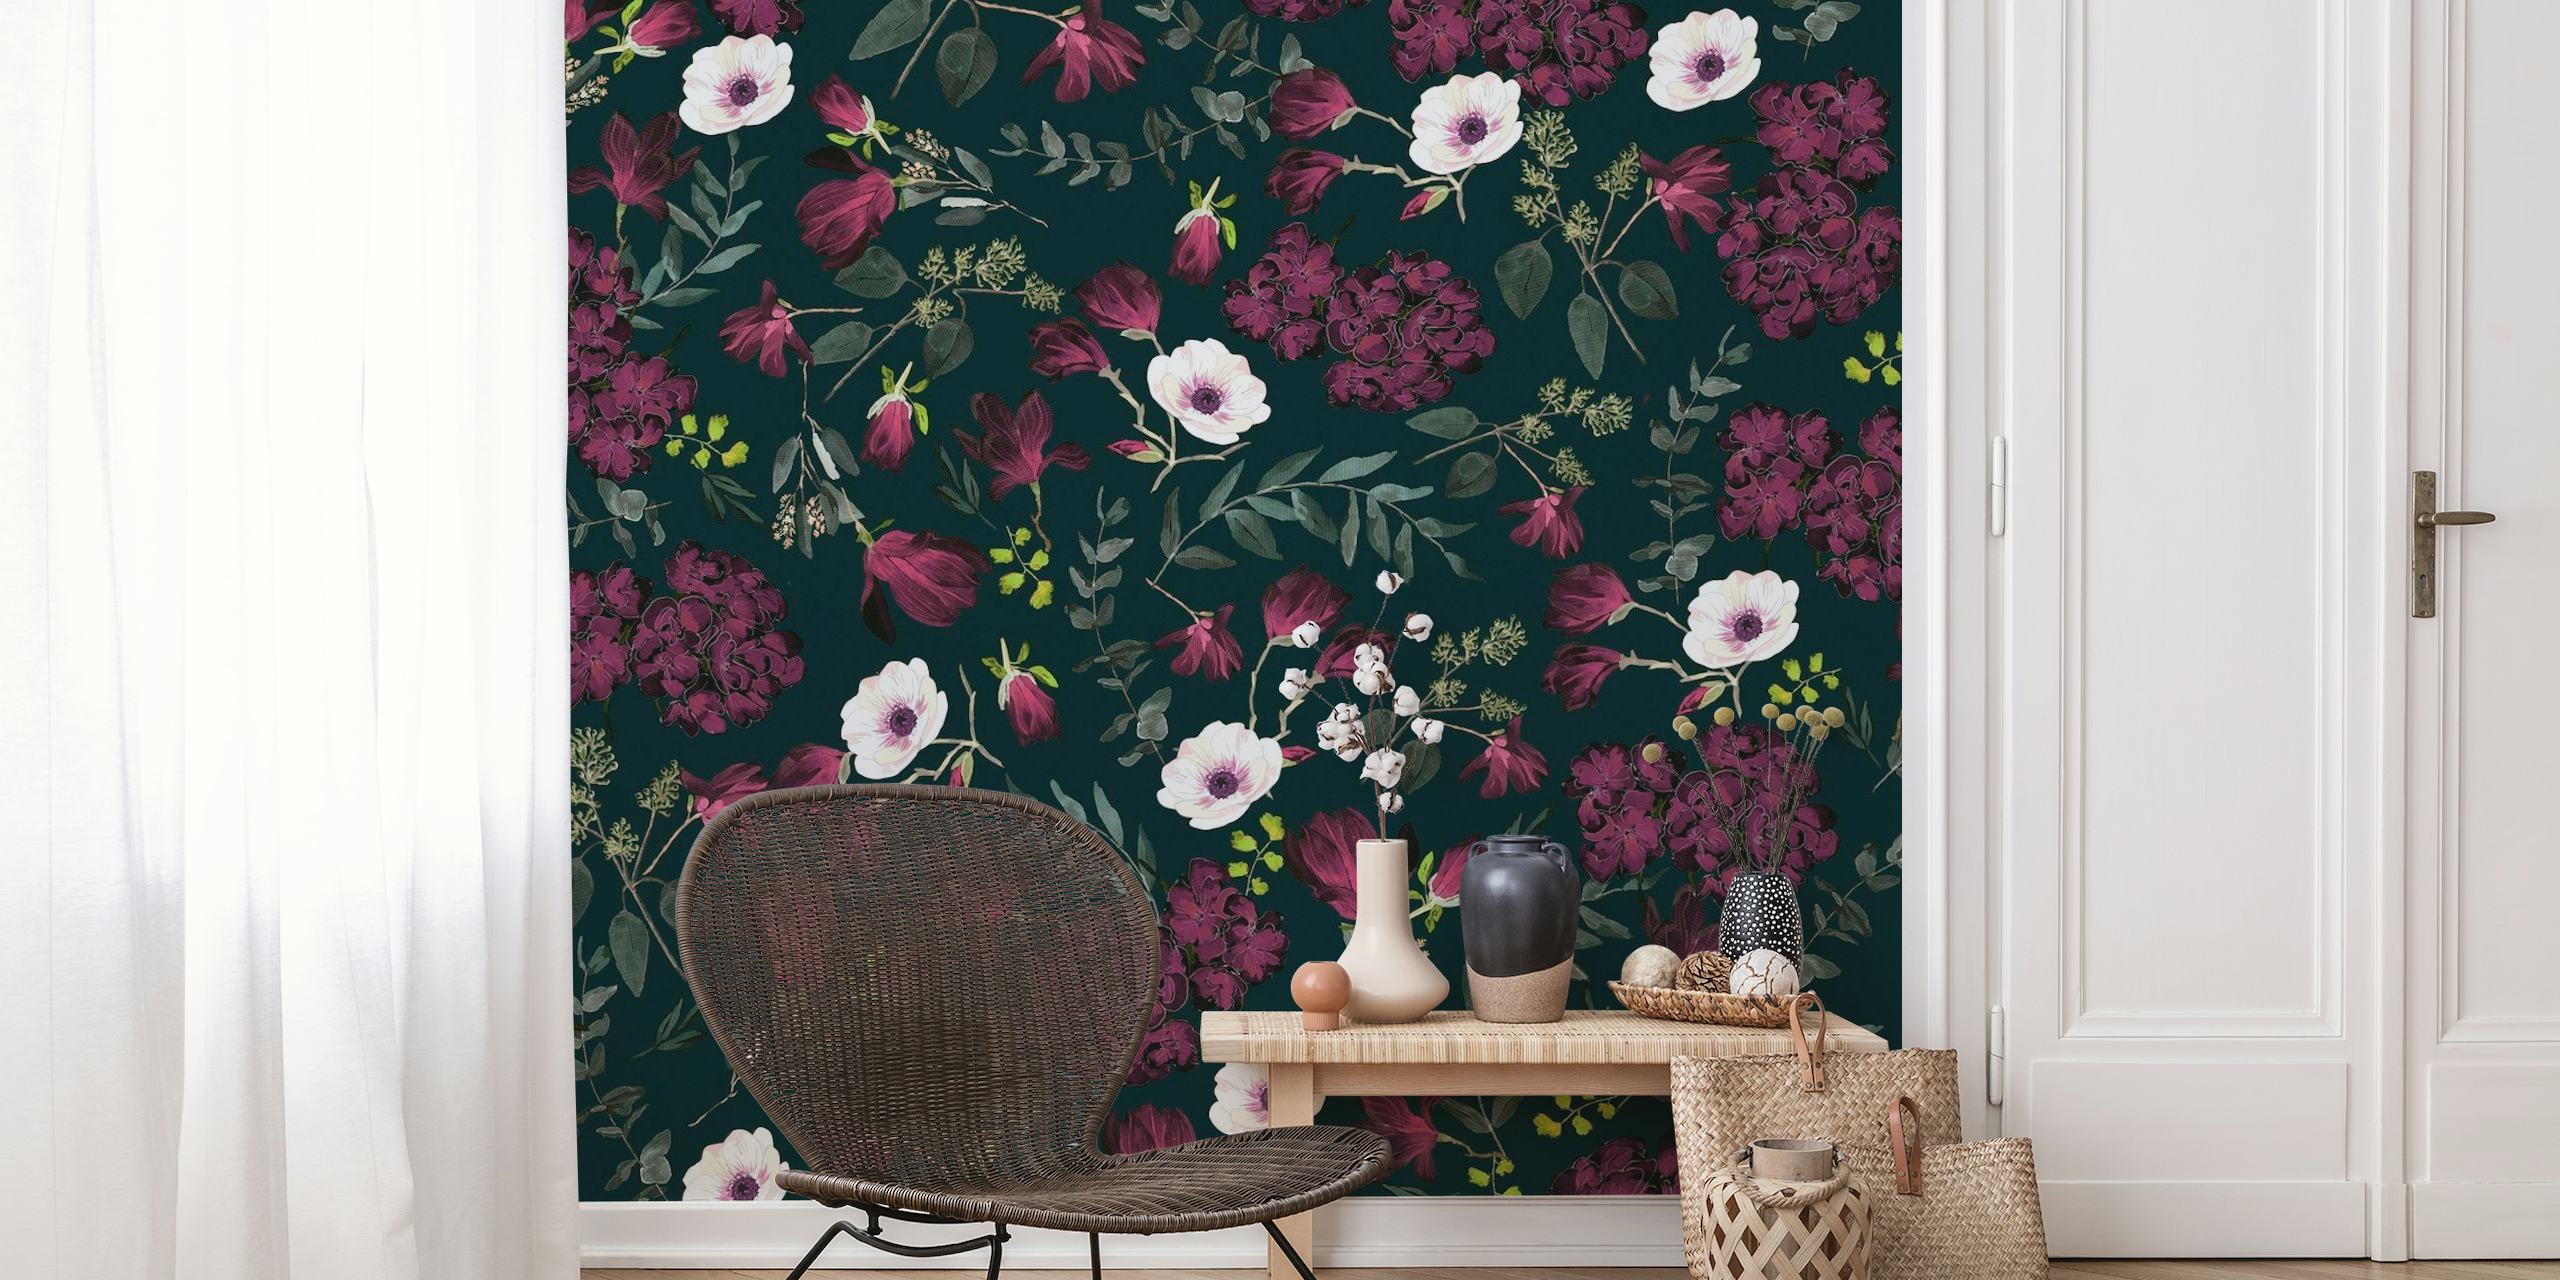 Patrón romántico floral oscuro con flores de color burdeos y fucsia, ideal para una decoración de pared sofisticada.